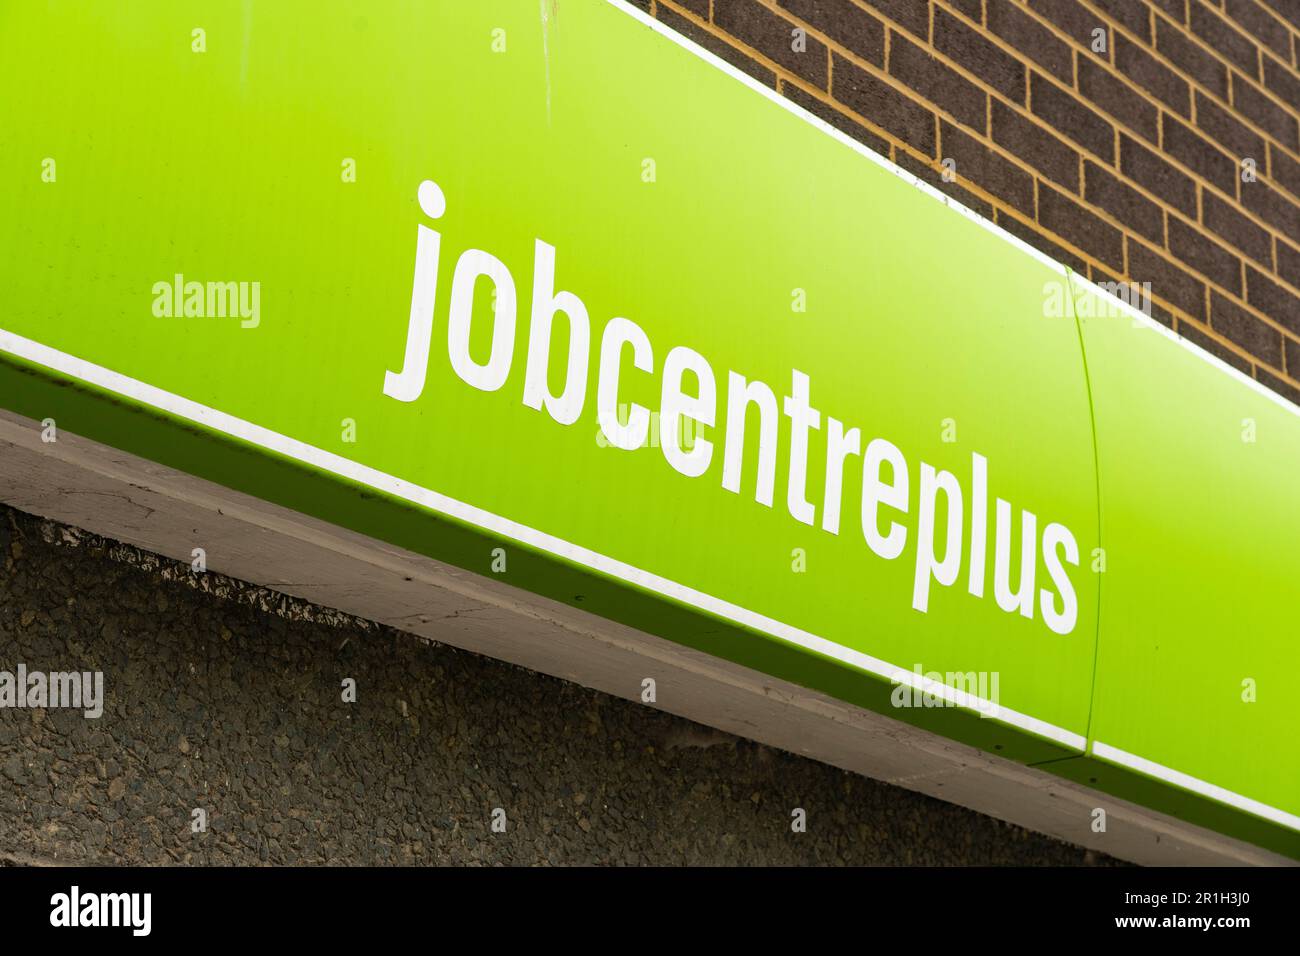 Suivez les panneaux indiquant le bâtiment Jobcentre plus sur Winchester Road à Basingstoke, Hampshire, Royaume-Uni. Concept: Emplois disponibles, marché de l'emploi, non déployé, sans emploi Banque D'Images